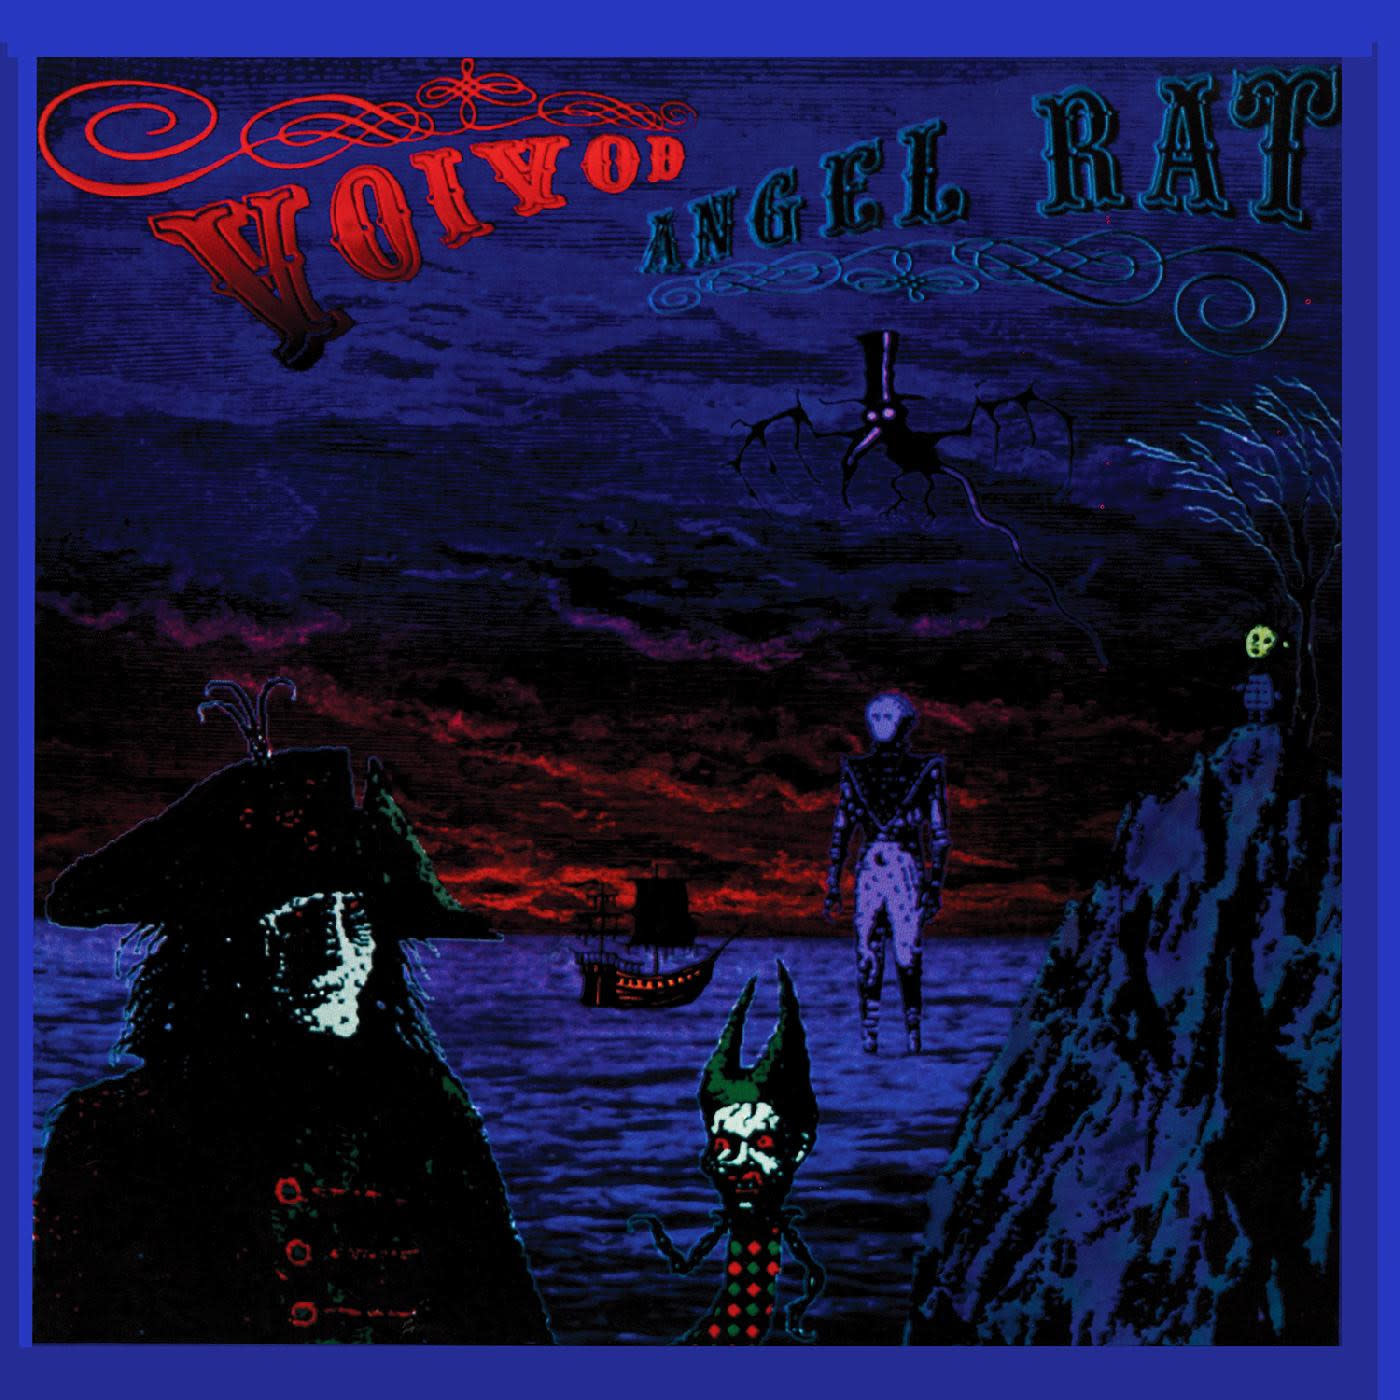 Metal Voivod - Angel Rat (Metallic Blue Vinyl)